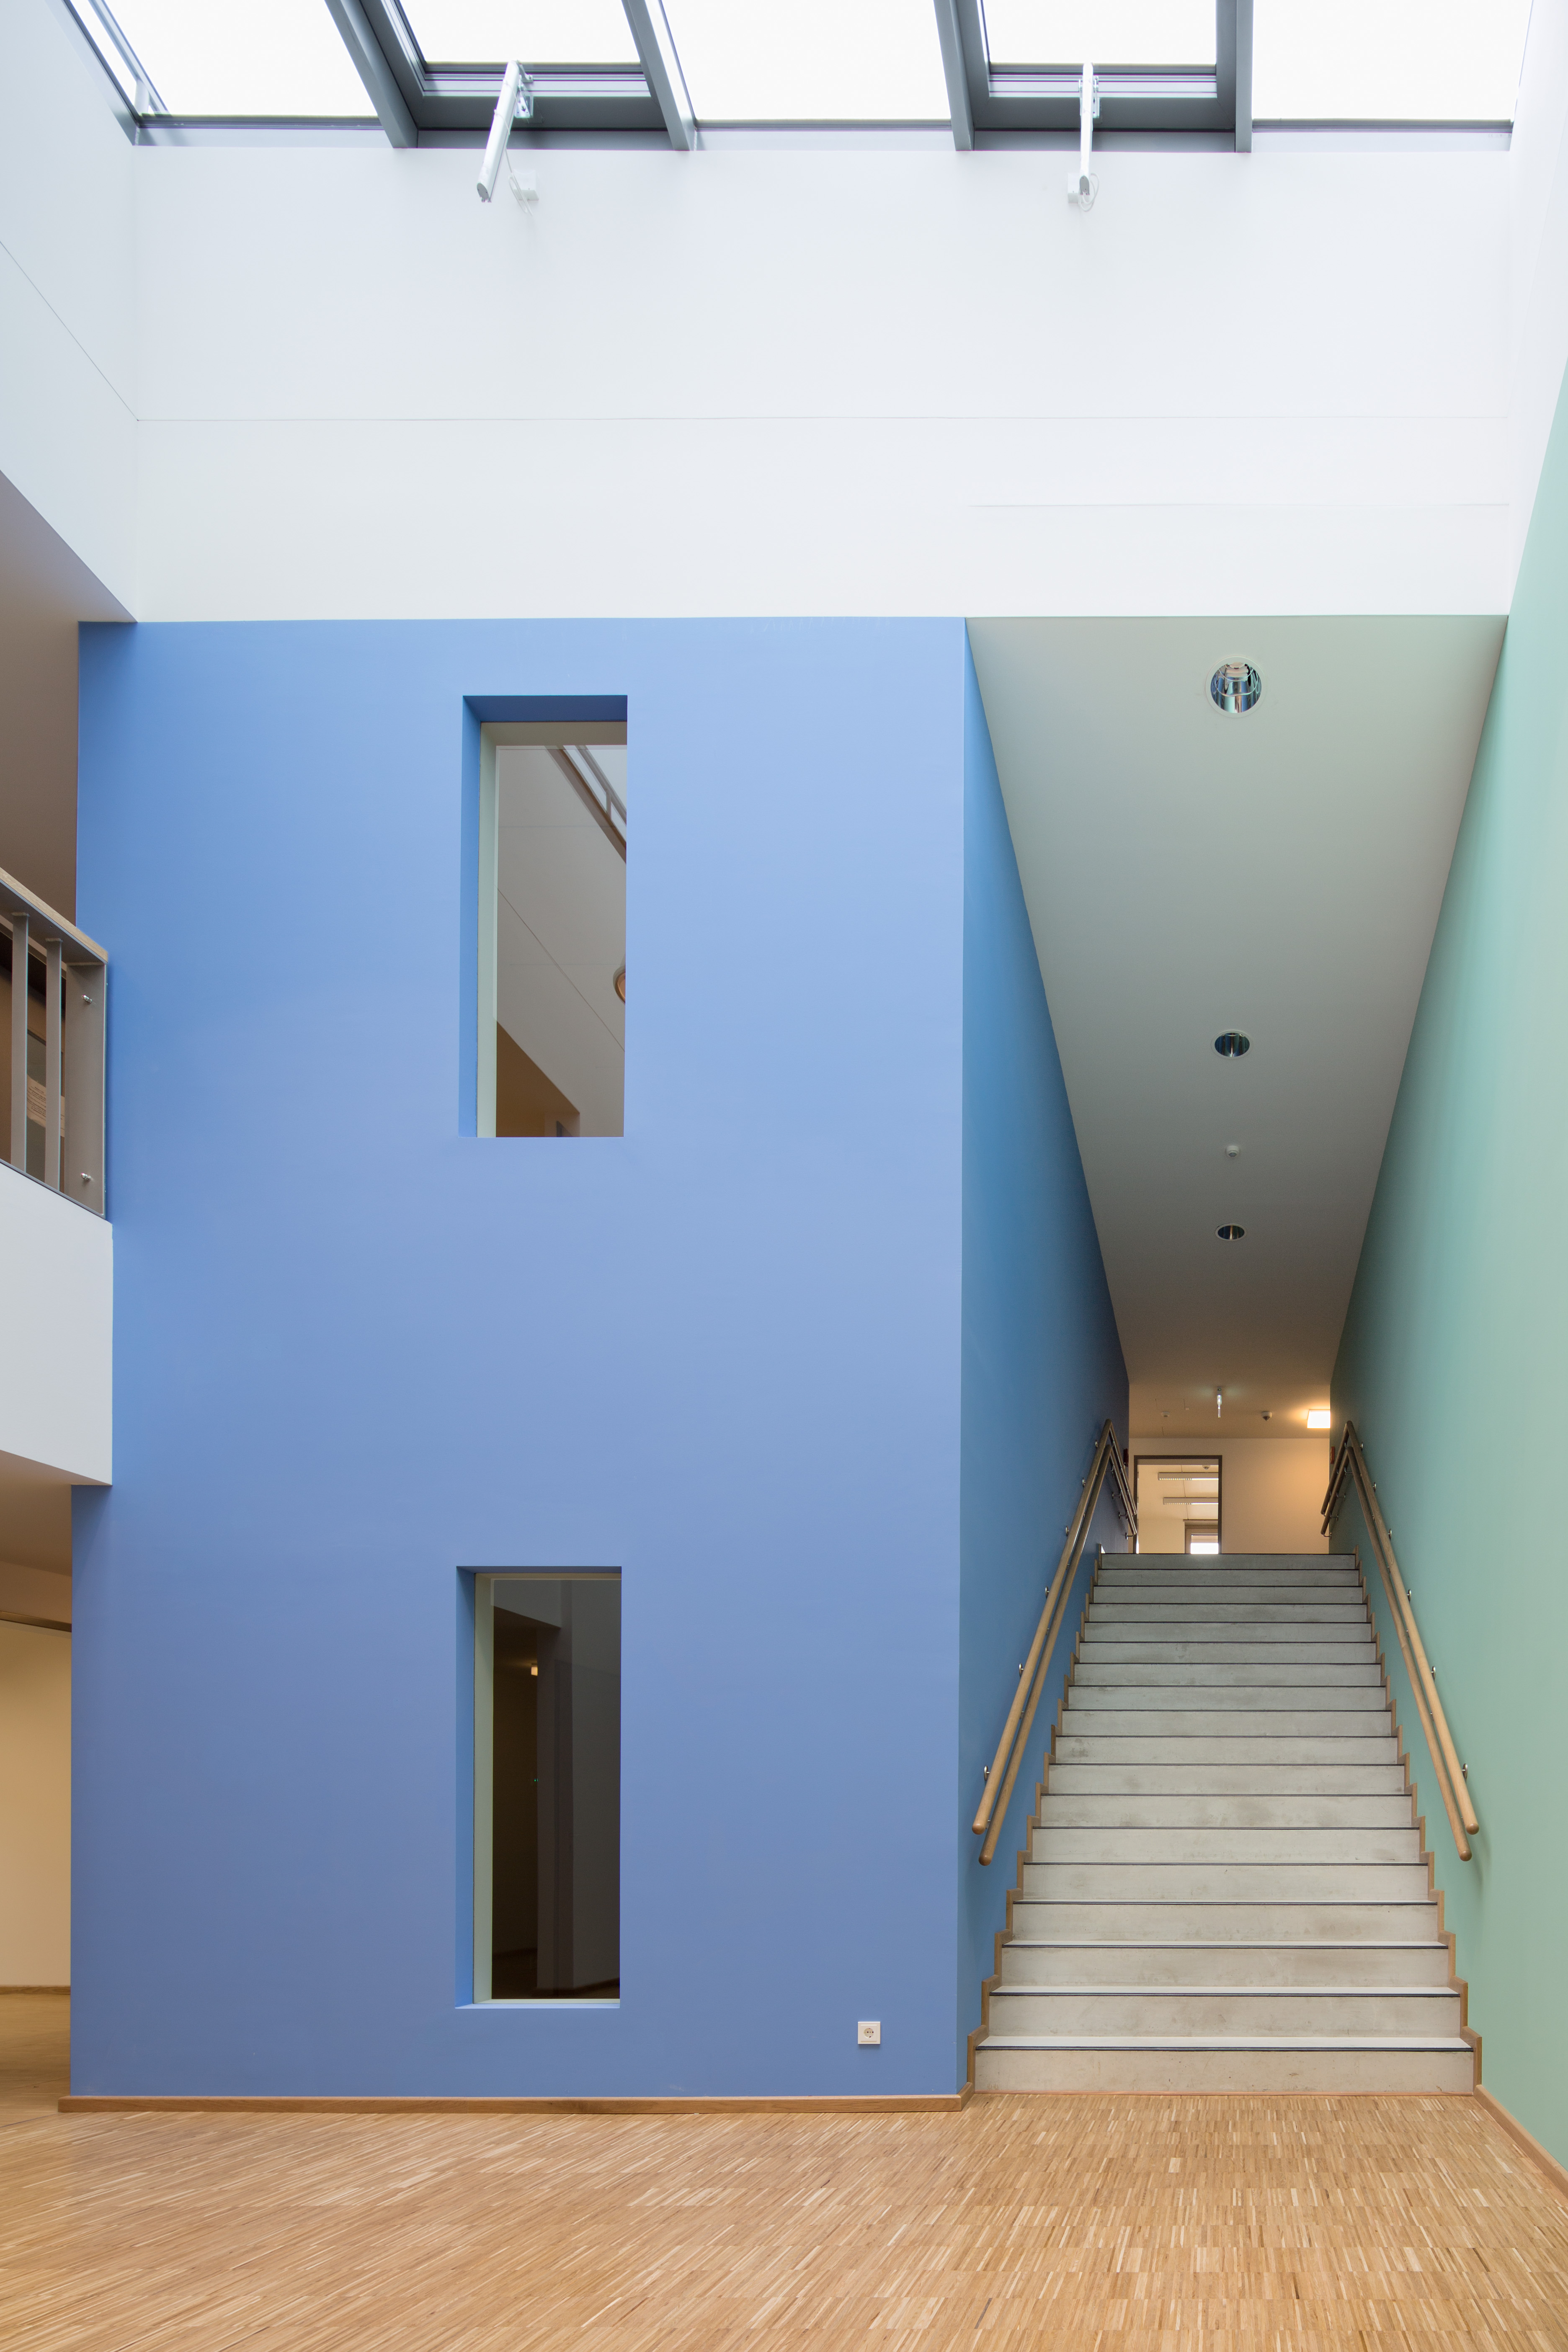 kleine Eingangshalle mit Glasdach und Treppenaufstieg, die Wände sind weiß, die Wände des Treppenhauses jedoch links blau uns rechts hellgrün gestrichen